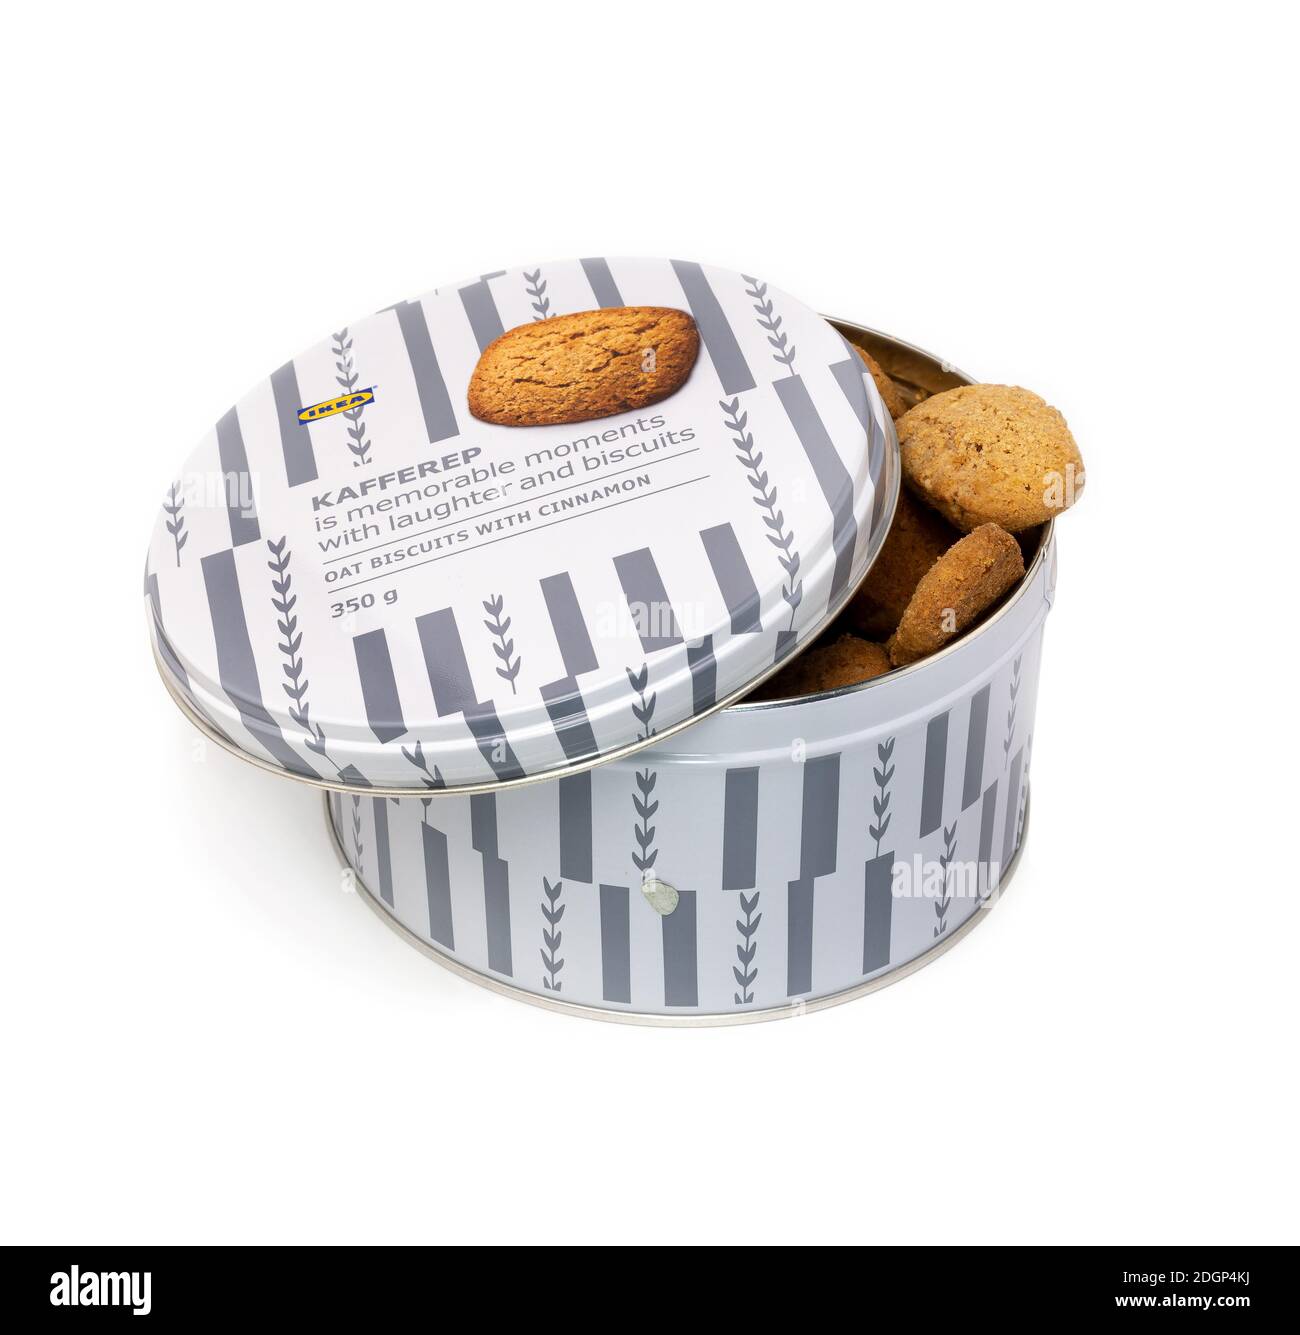 Biscuits ikea Banque d'images détourées - Alamy